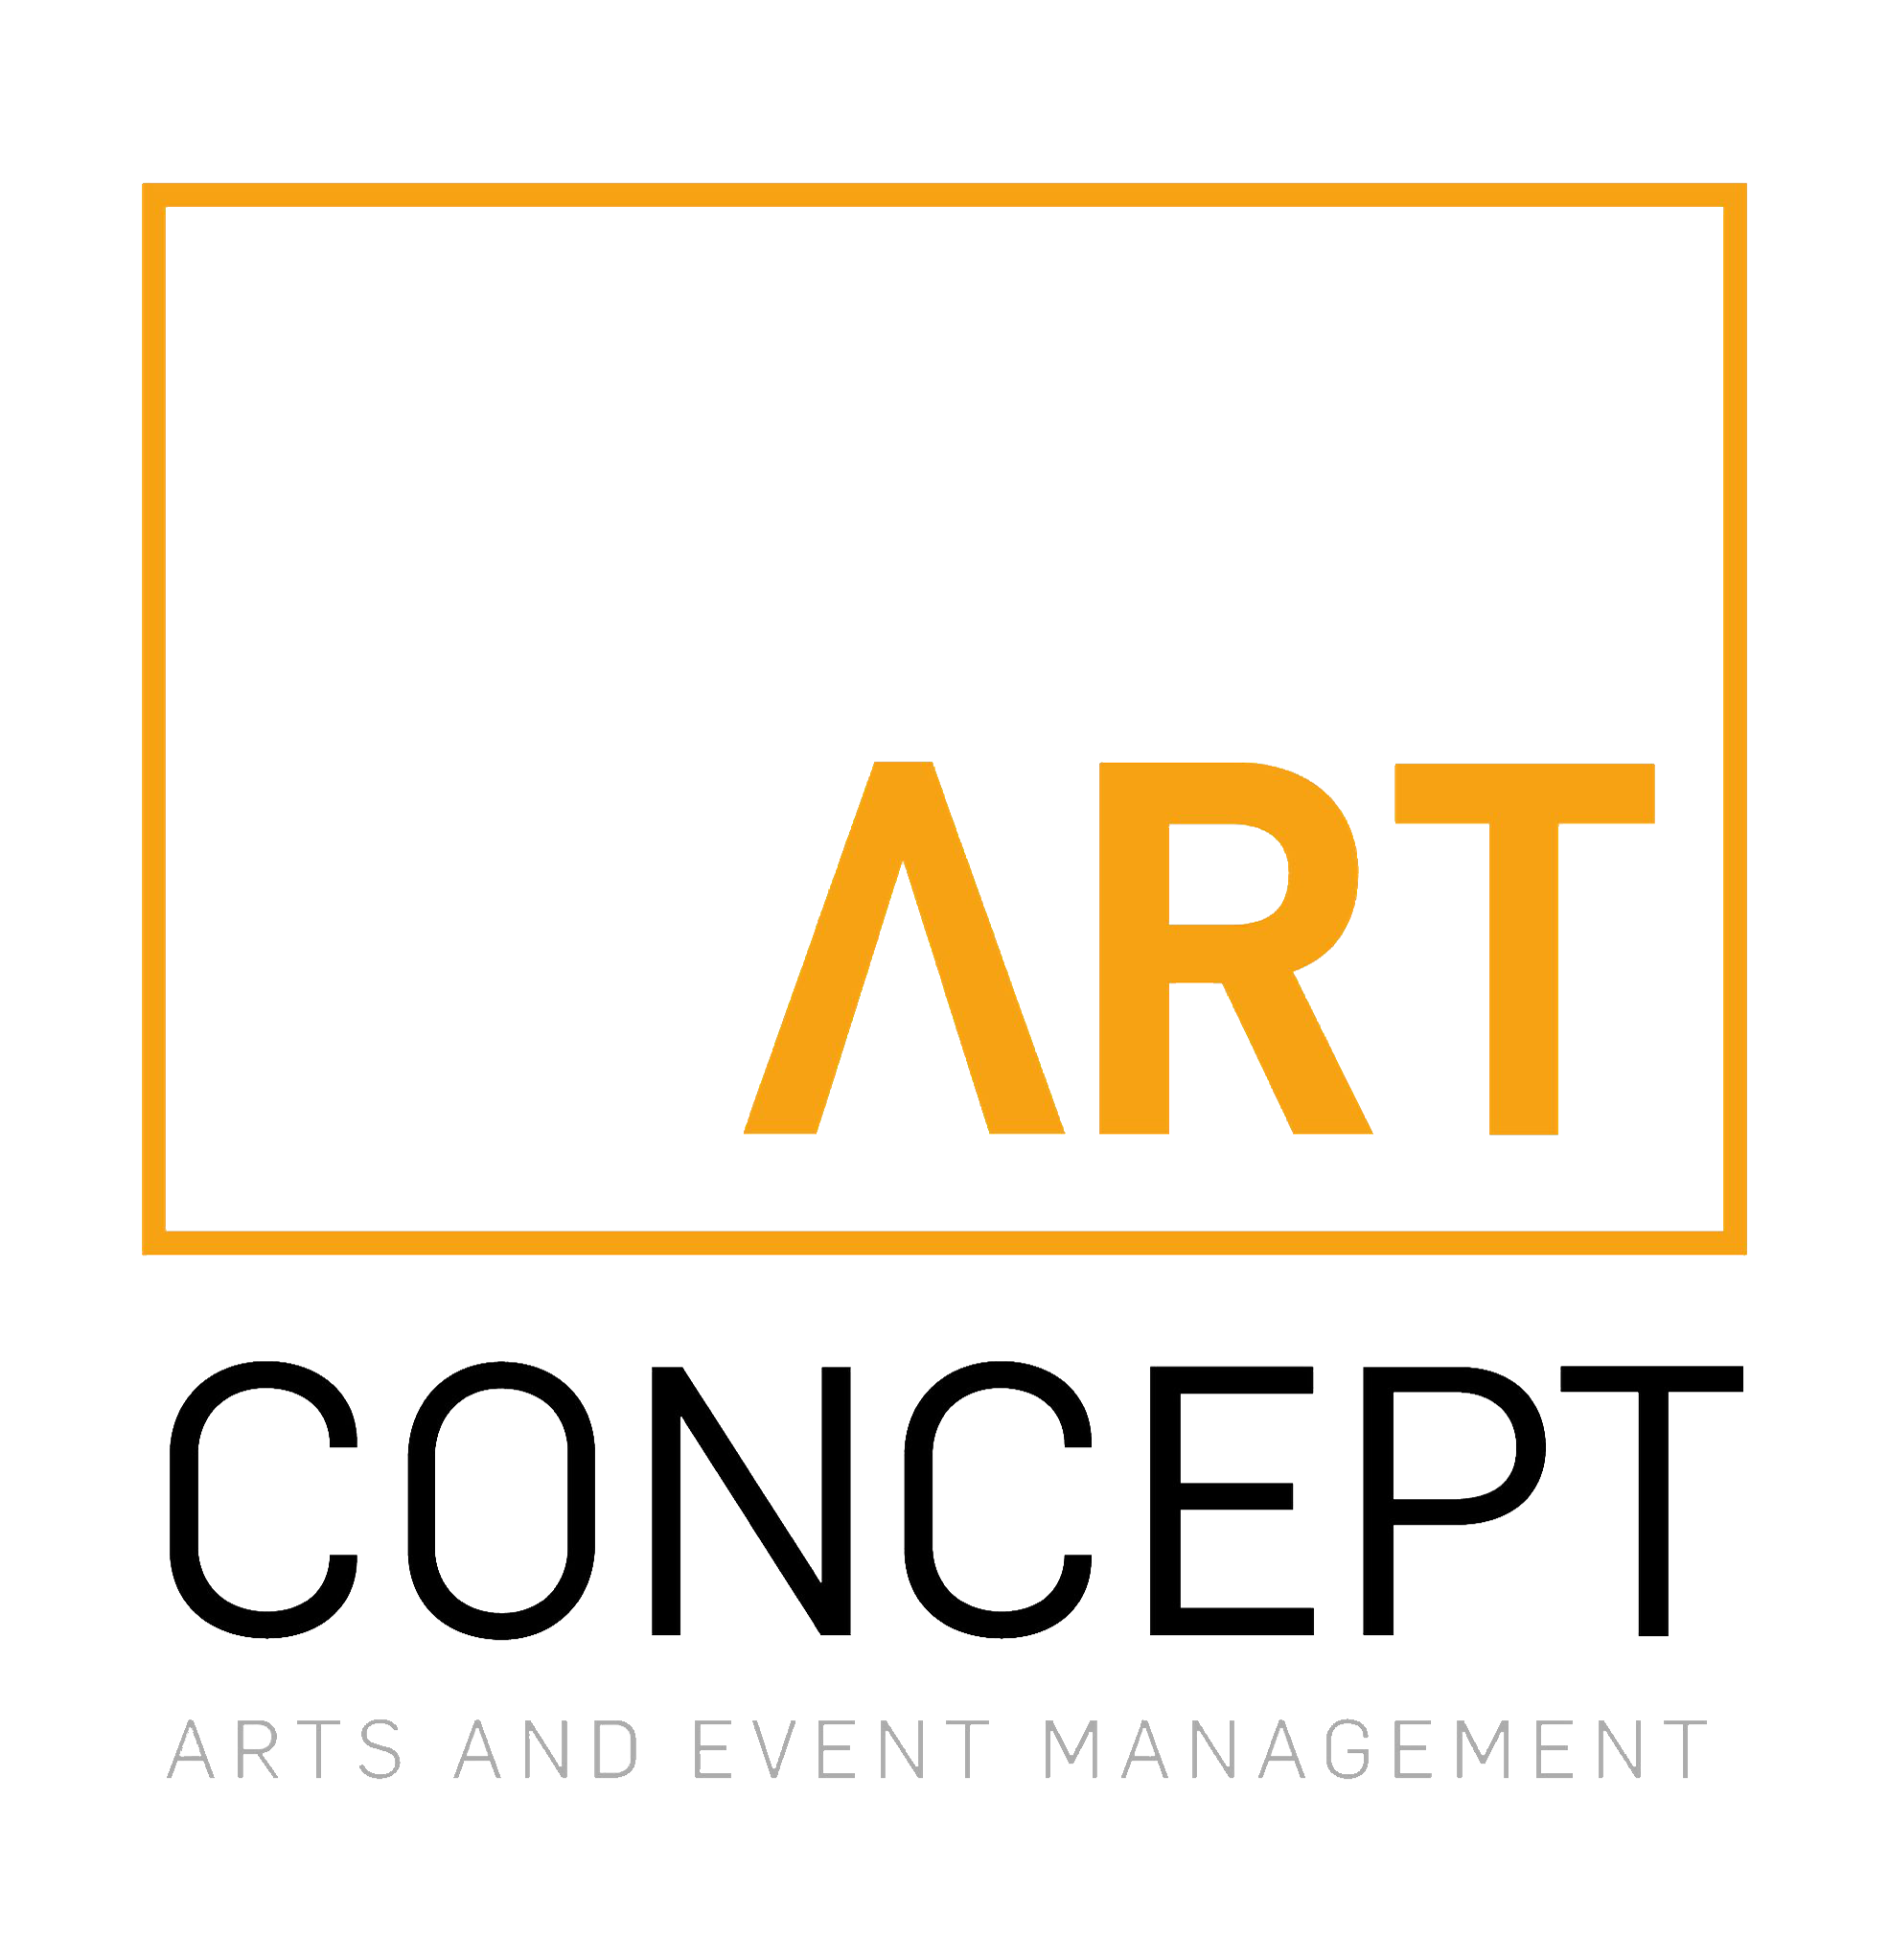 Art Concept Productions